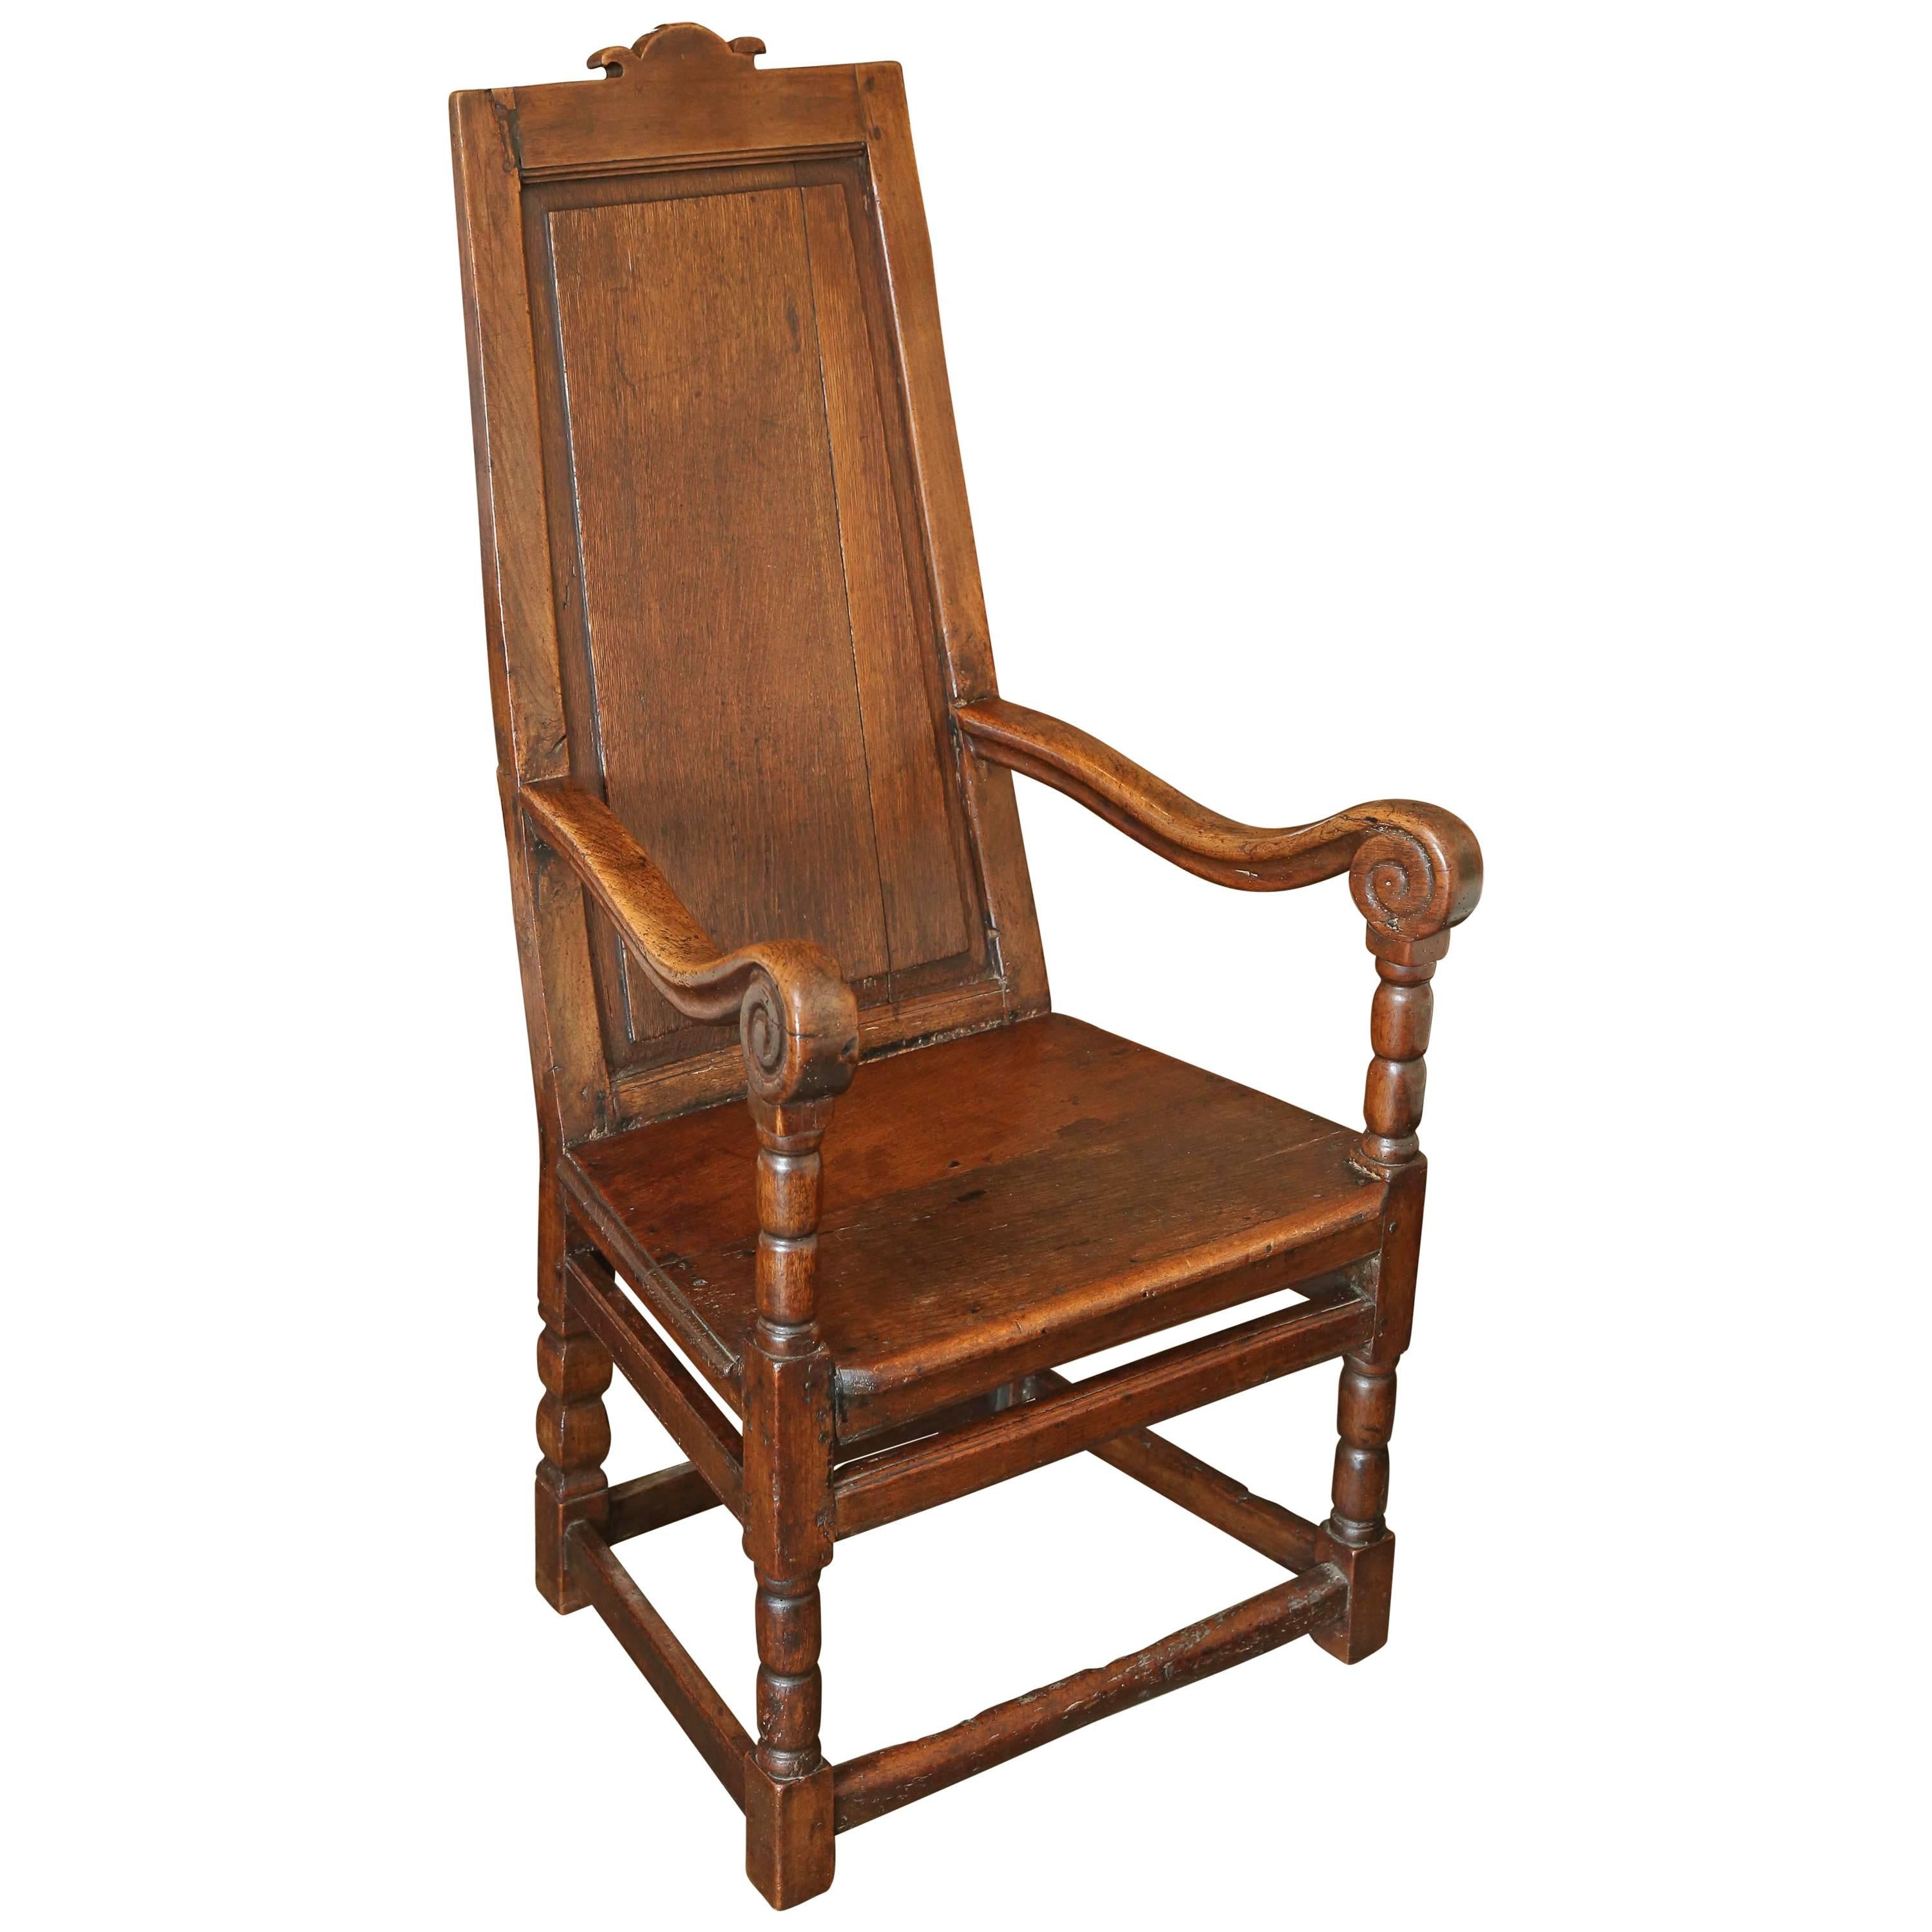 Chaise de salon galloise en chêne du 18ème siècle de type Wainscot